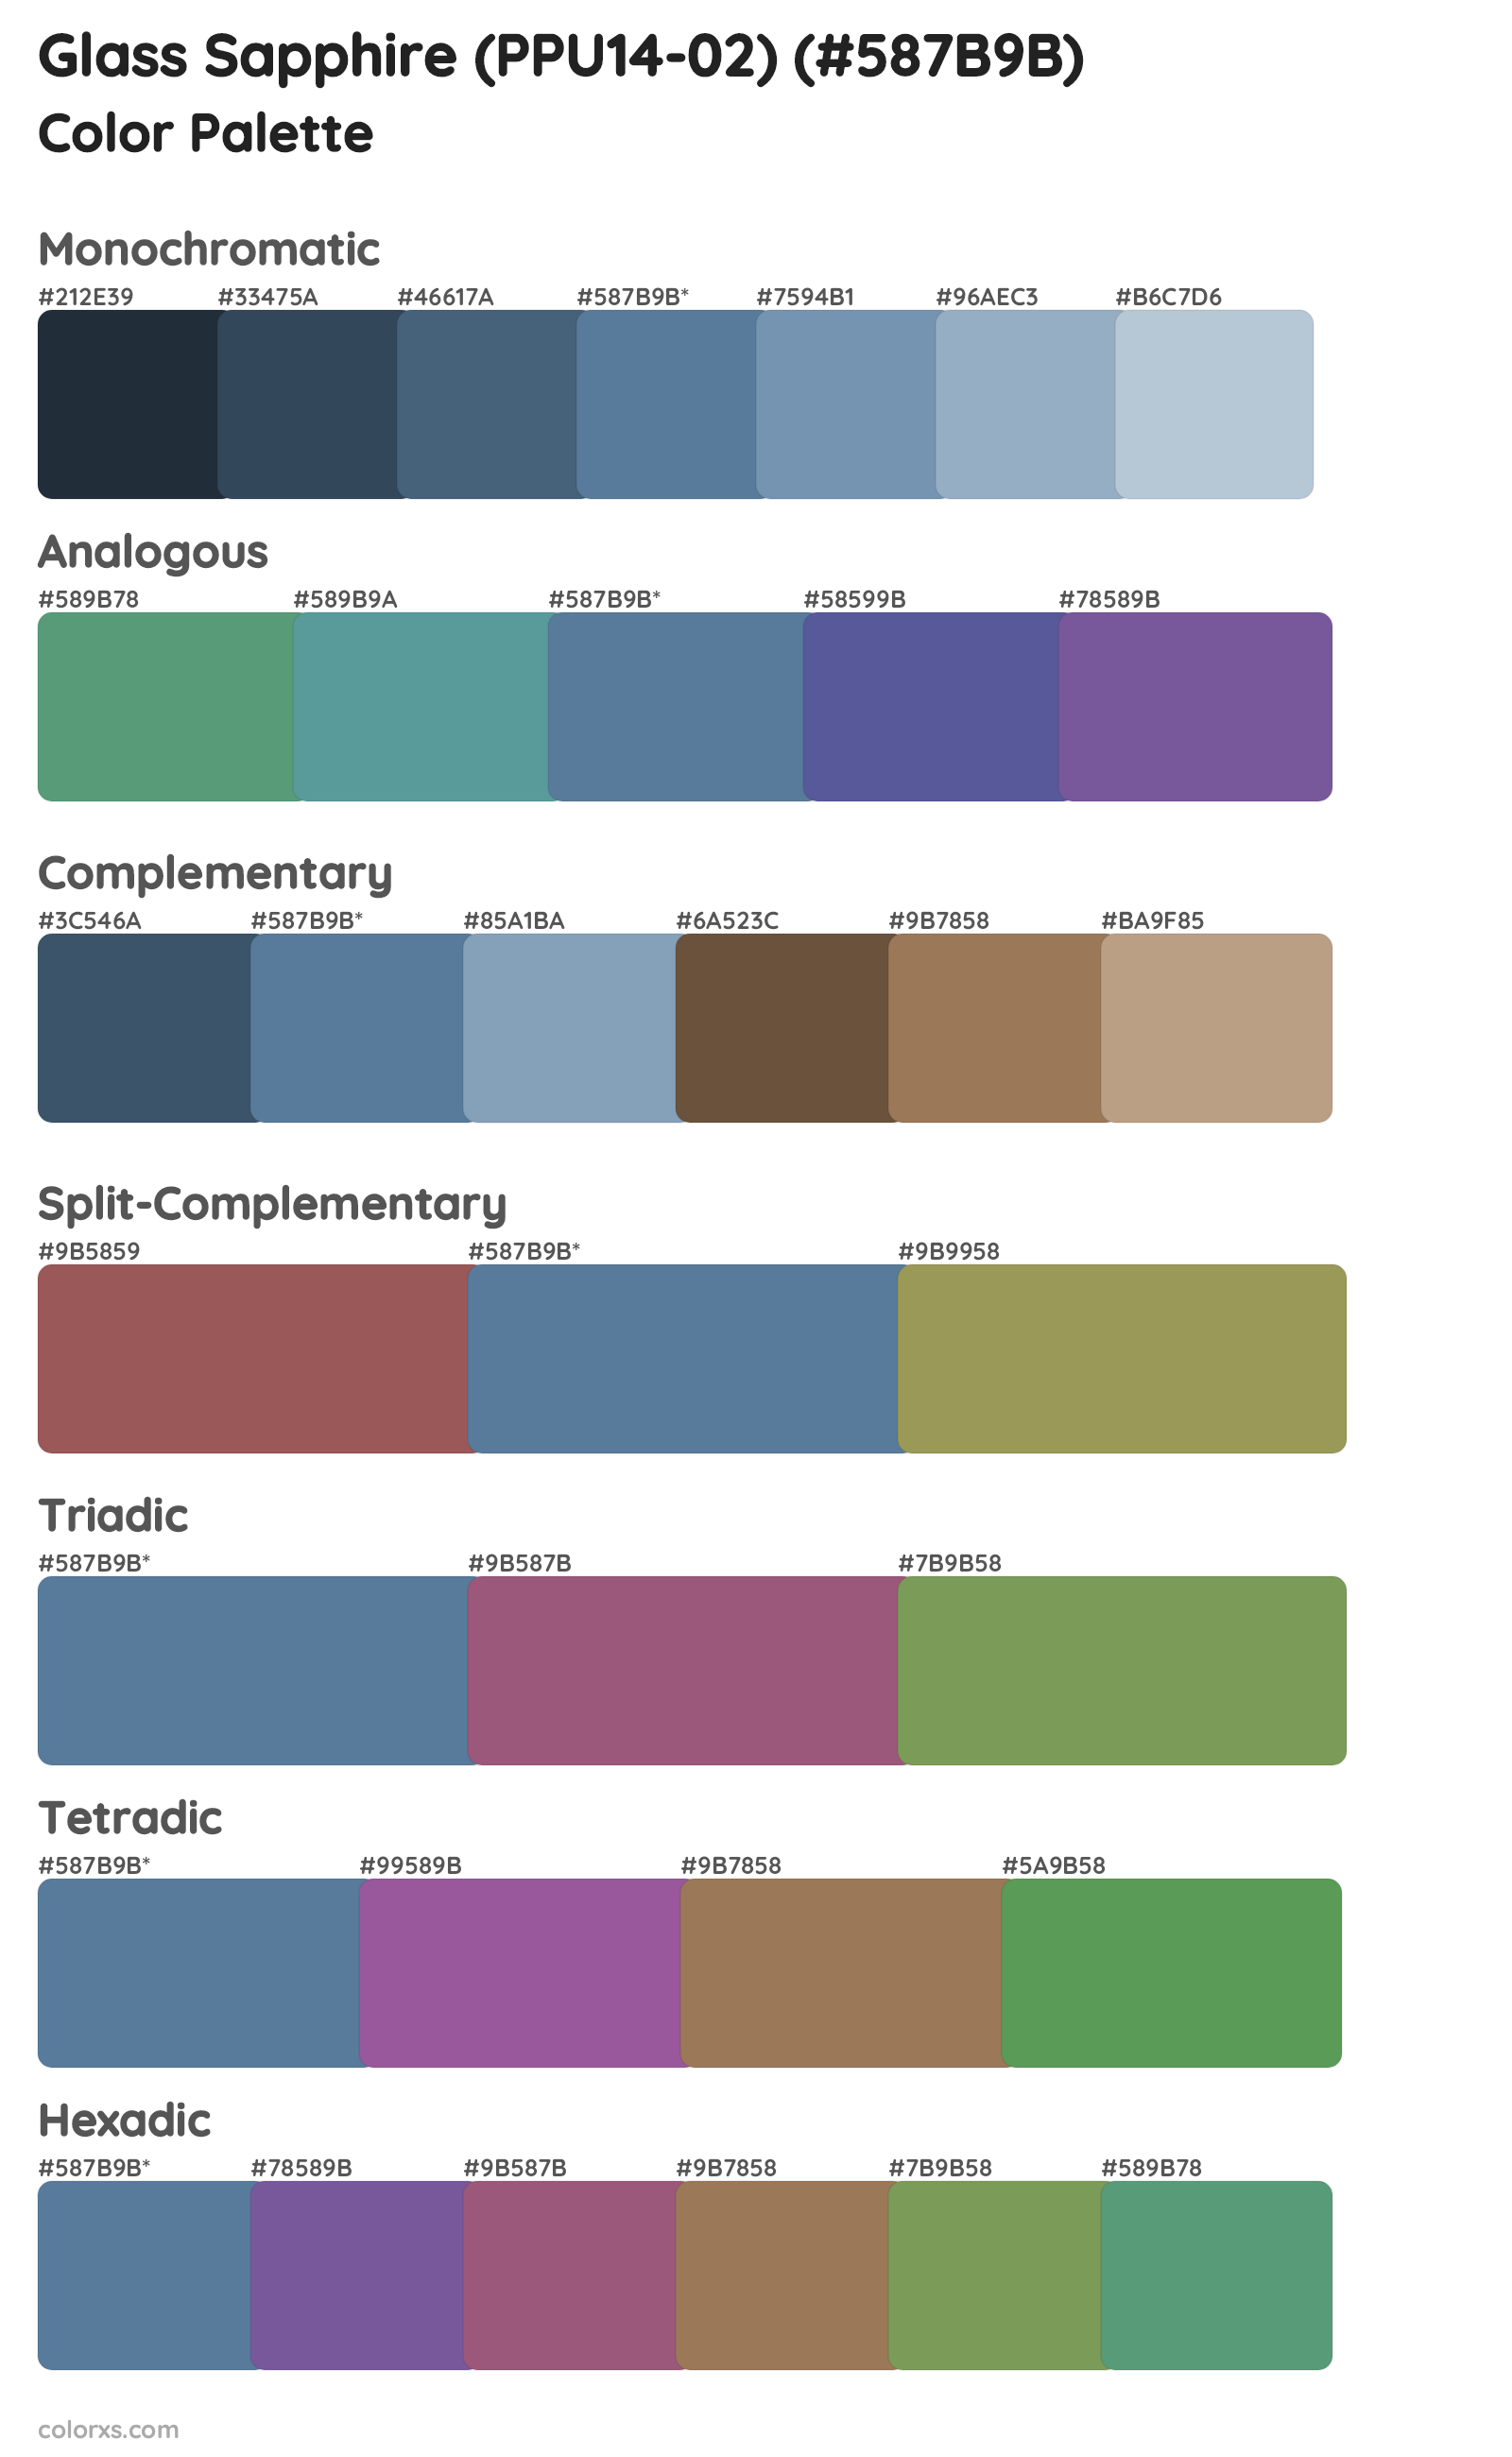 Glass Sapphire (PPU14-02) Color Scheme Palettes